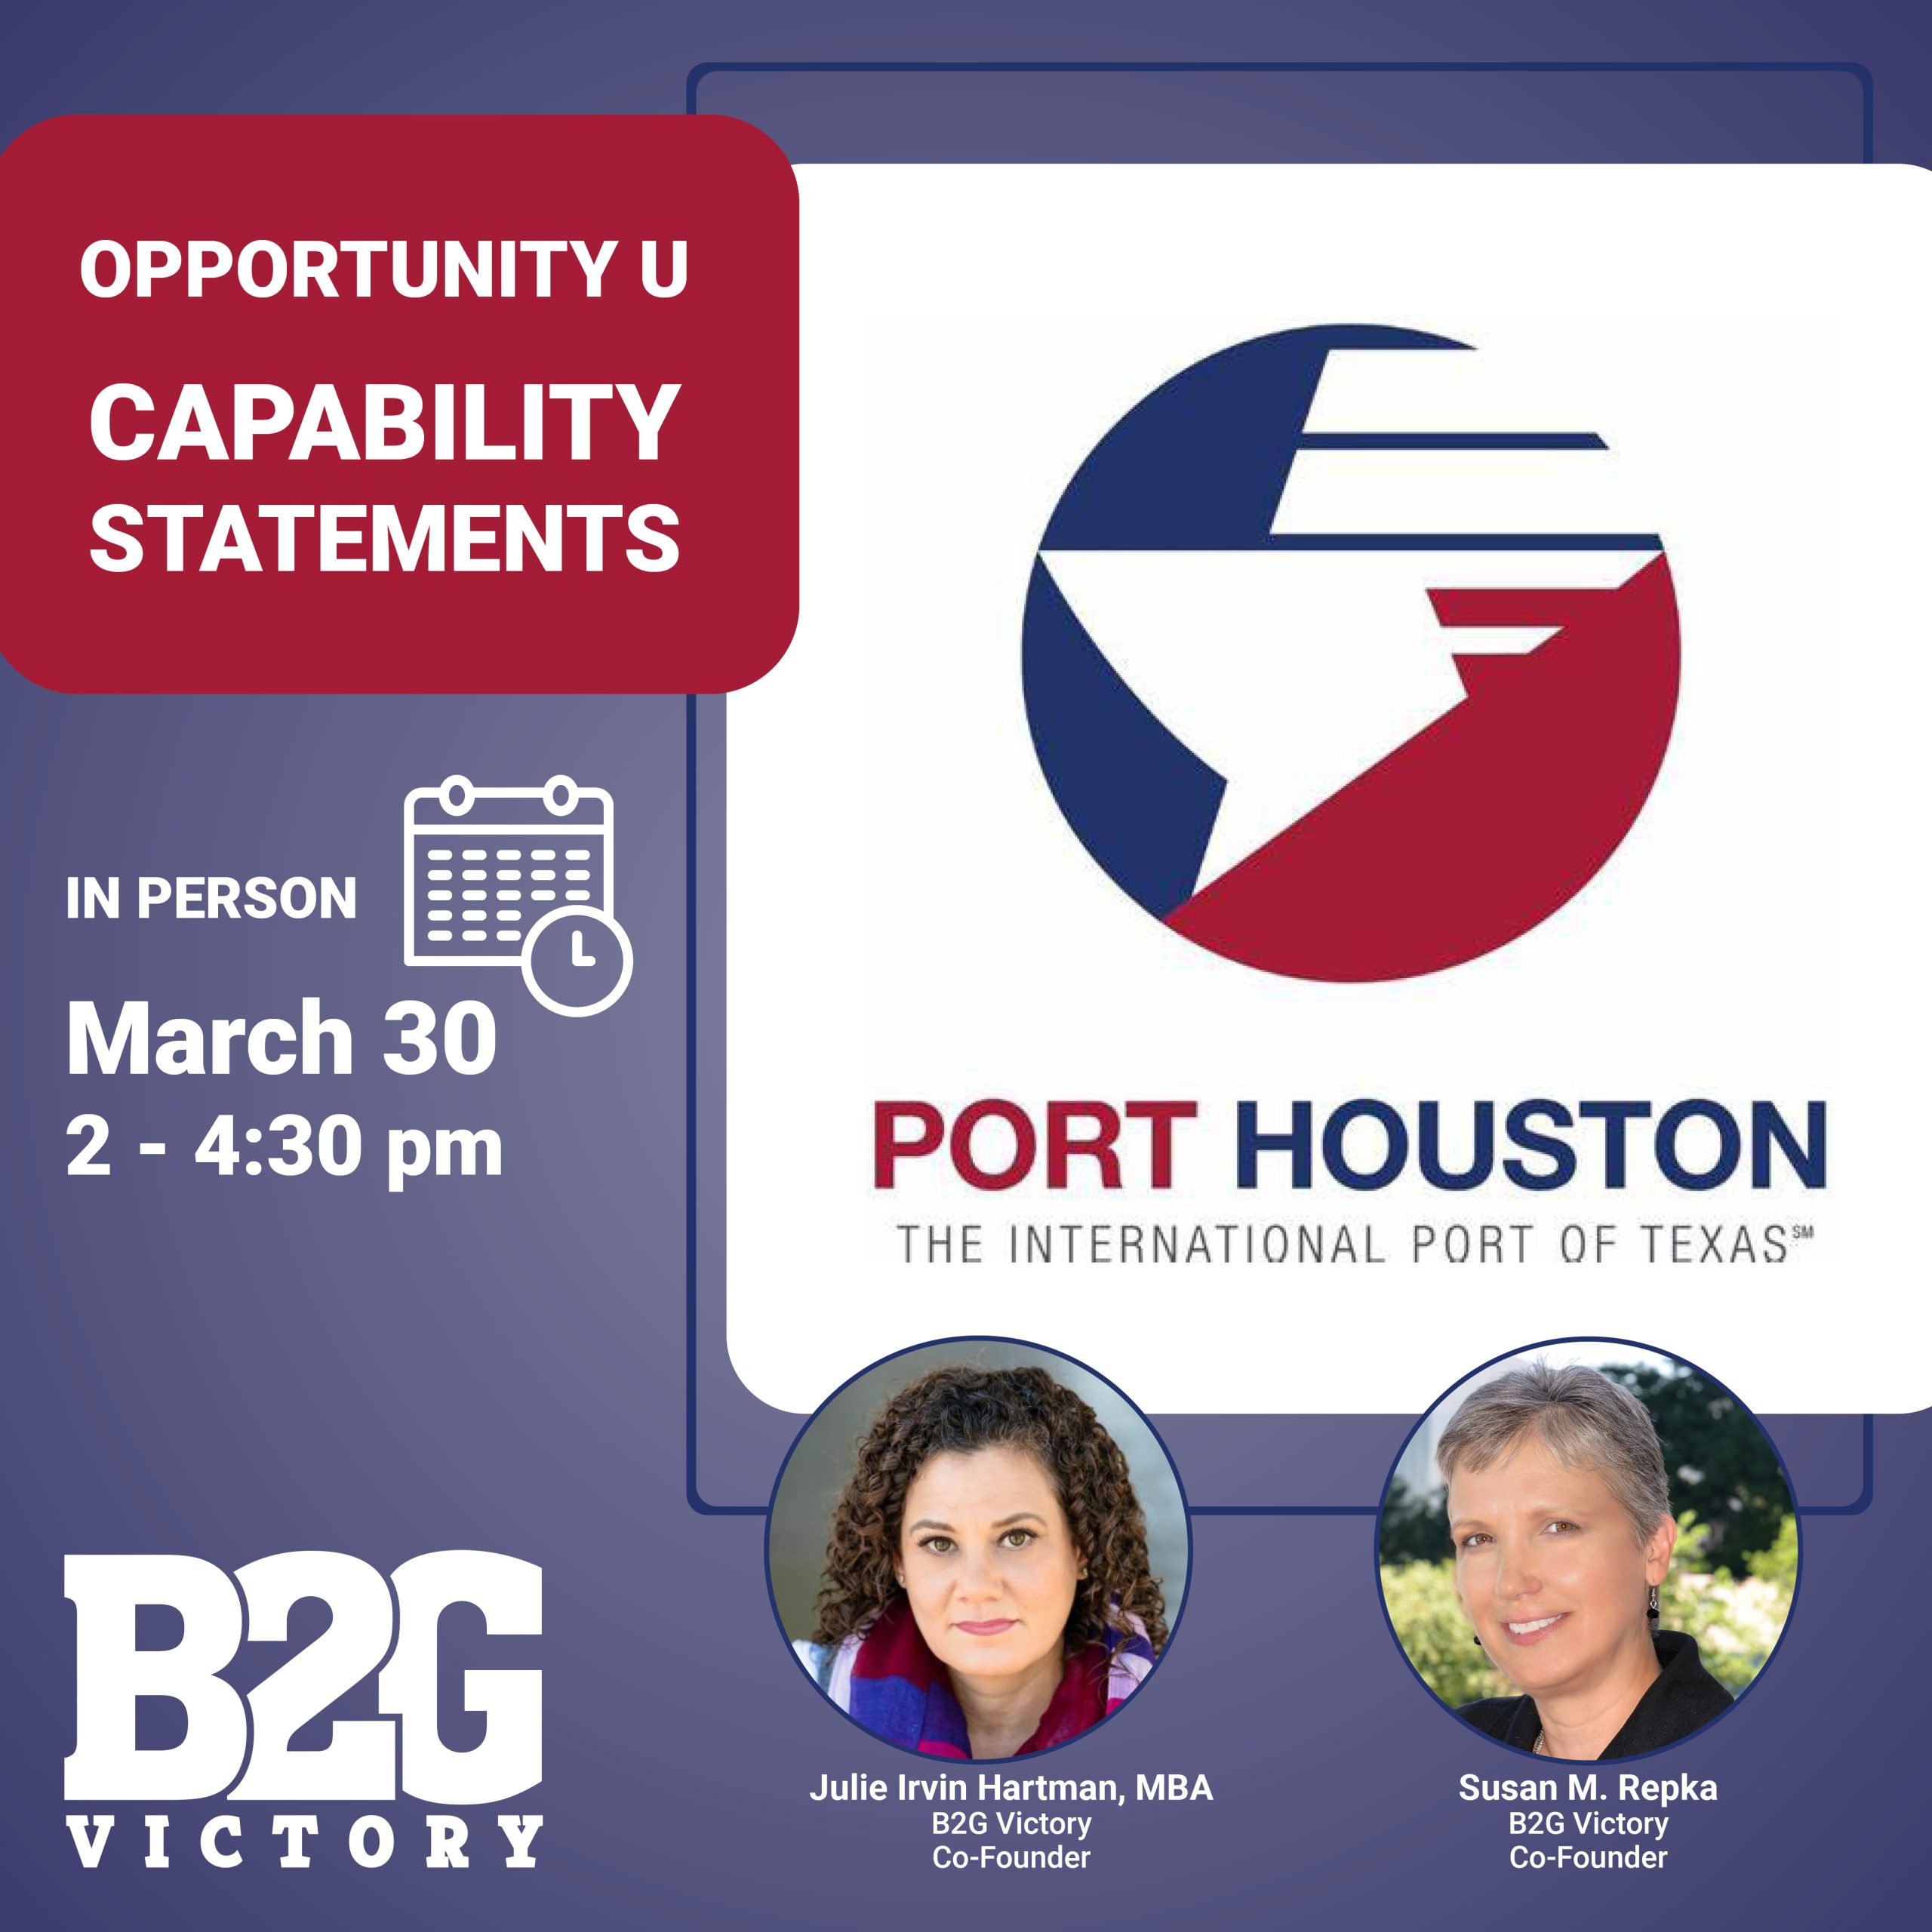 Port Houston Opportunity U Capability Statement